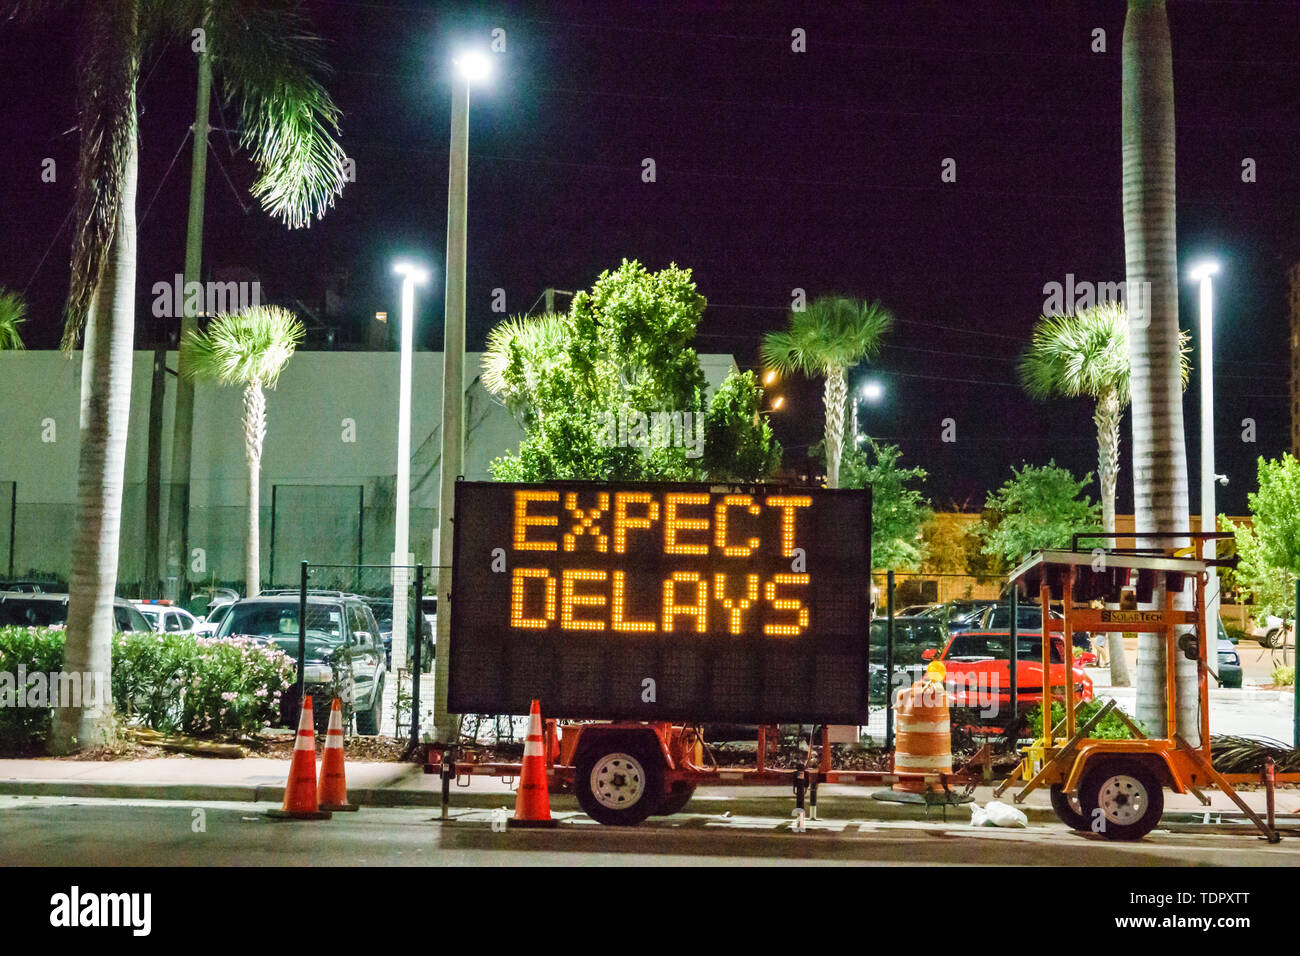 Miami Beach Florida, North Beach, variabler Nachrichtenschild VMS-Trailer, erwartet Verspätungen Verkehrshinweis, Nacht, FL190424019 Stockfoto